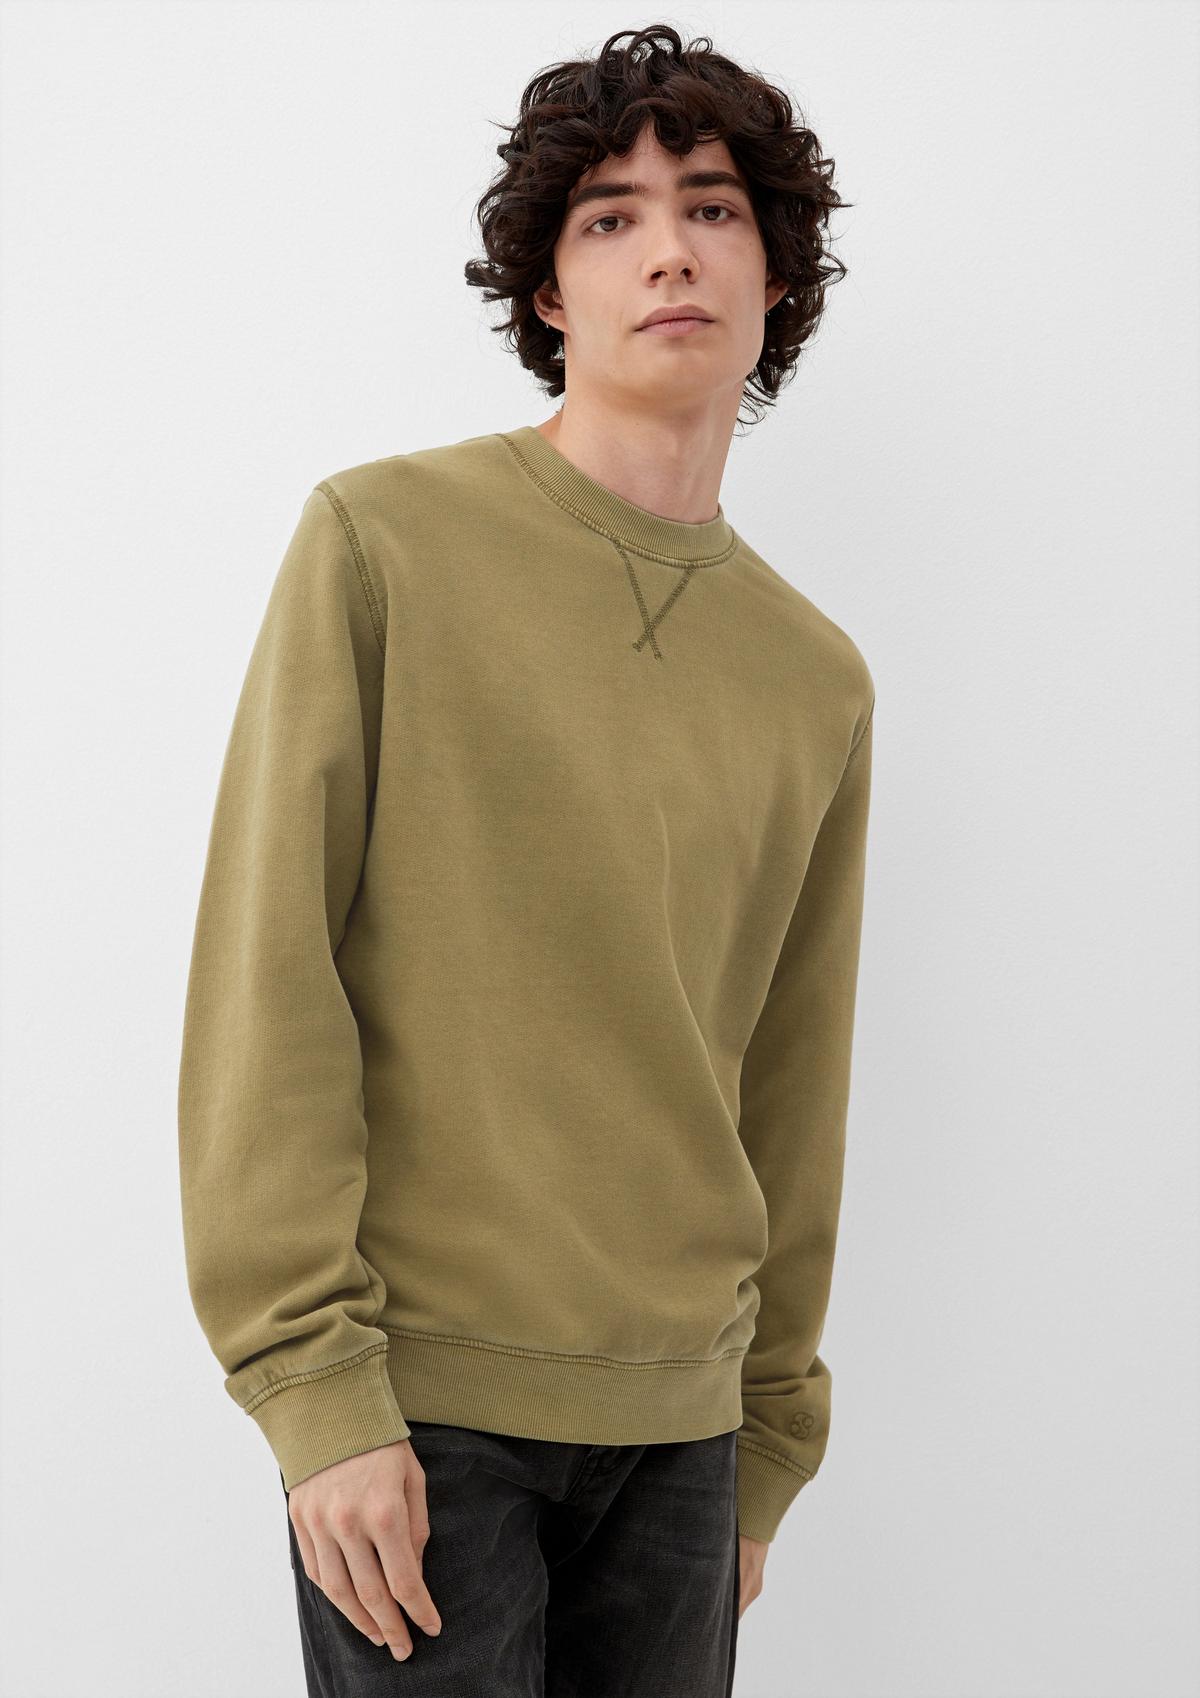 Sweater mit Crew Neck - gelb